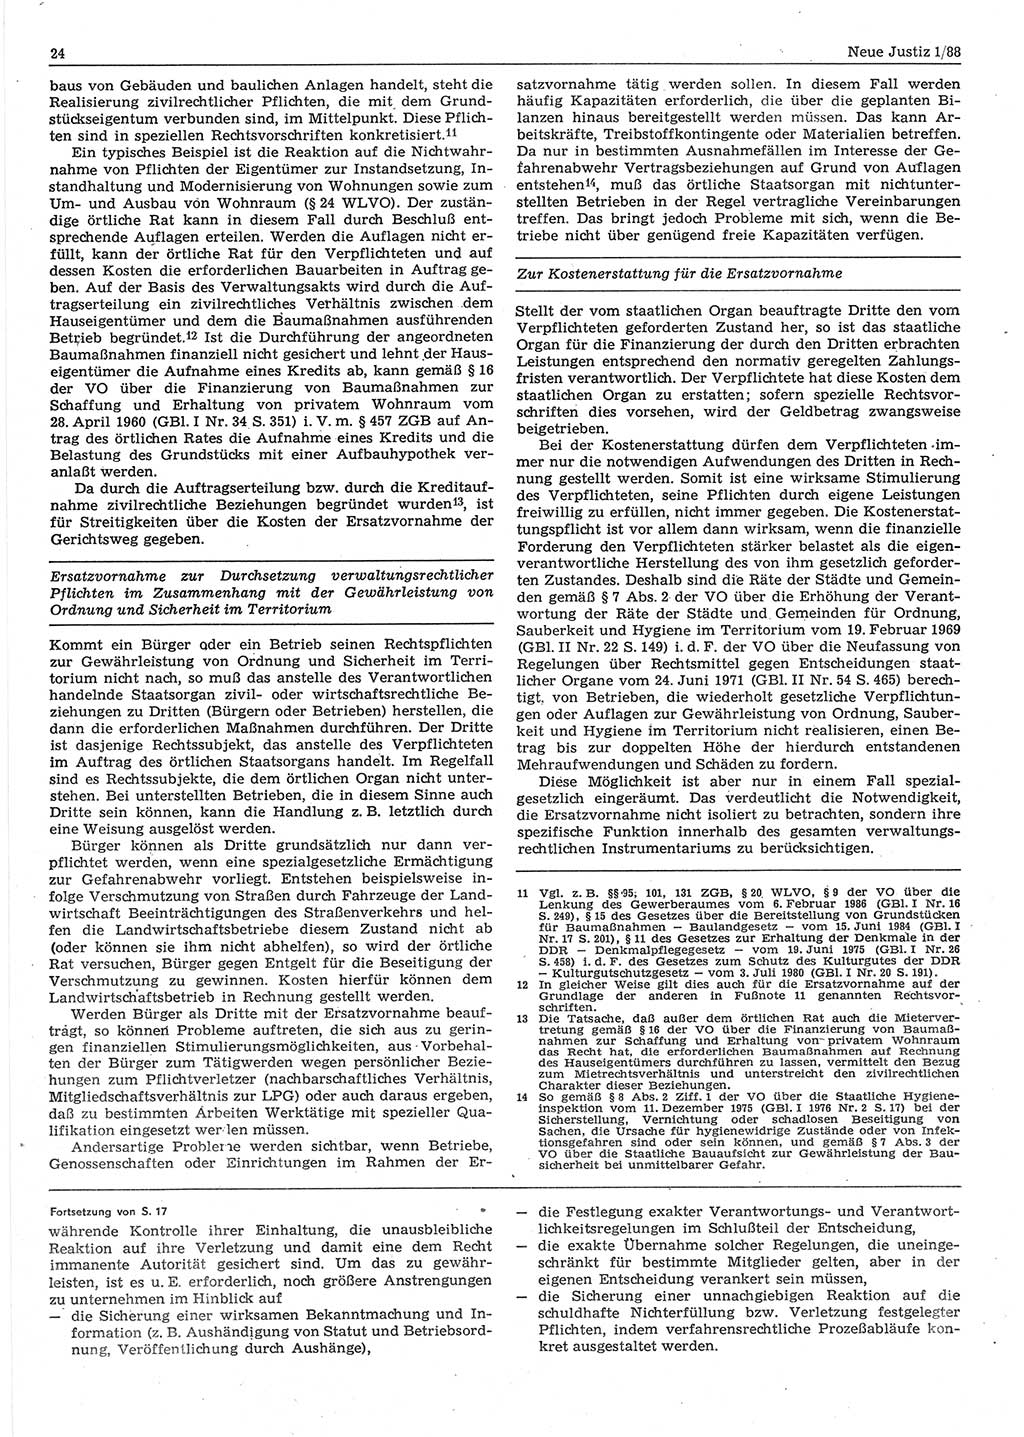 Neue Justiz (NJ), Zeitschrift für sozialistisches Recht und Gesetzlichkeit [Deutsche Demokratische Republik (DDR)], 42. Jahrgang 1988, Seite 24 (NJ DDR 1988, S. 24)